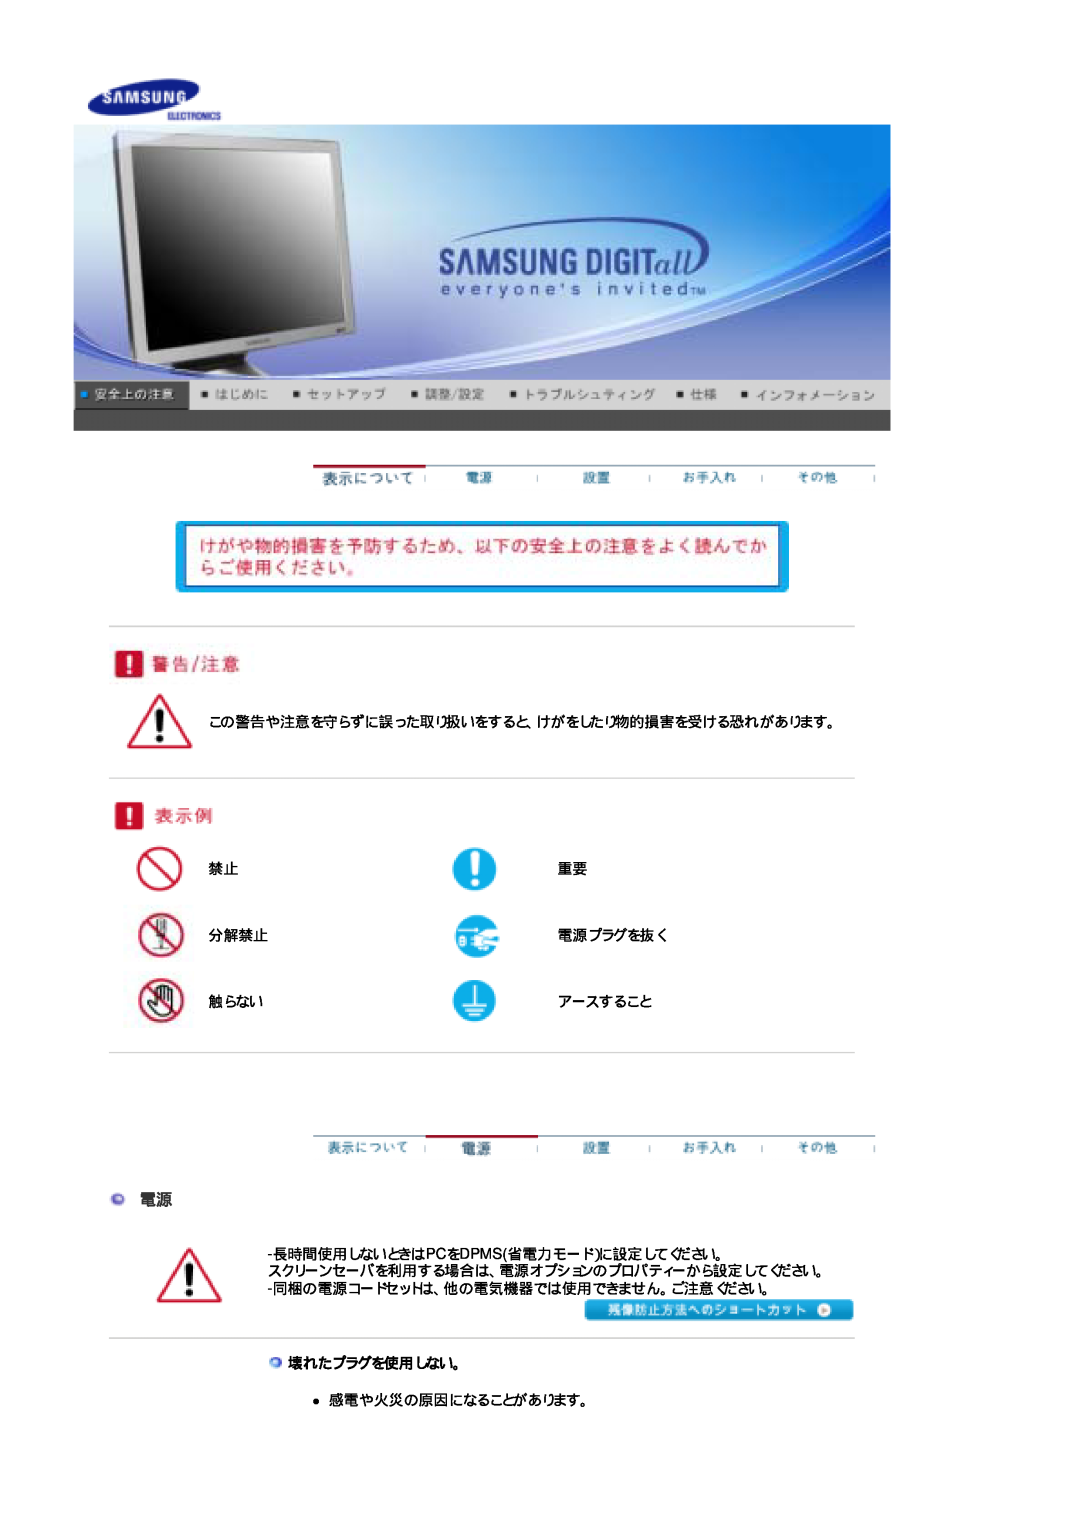 Samsung LS17CIBQS1/XSJ, LS19CIBQSV/XSJ, LS19CIBQS1/XSJ, LS17CIBQSV/XSJ manual 壊れたプラグを使用しない。 